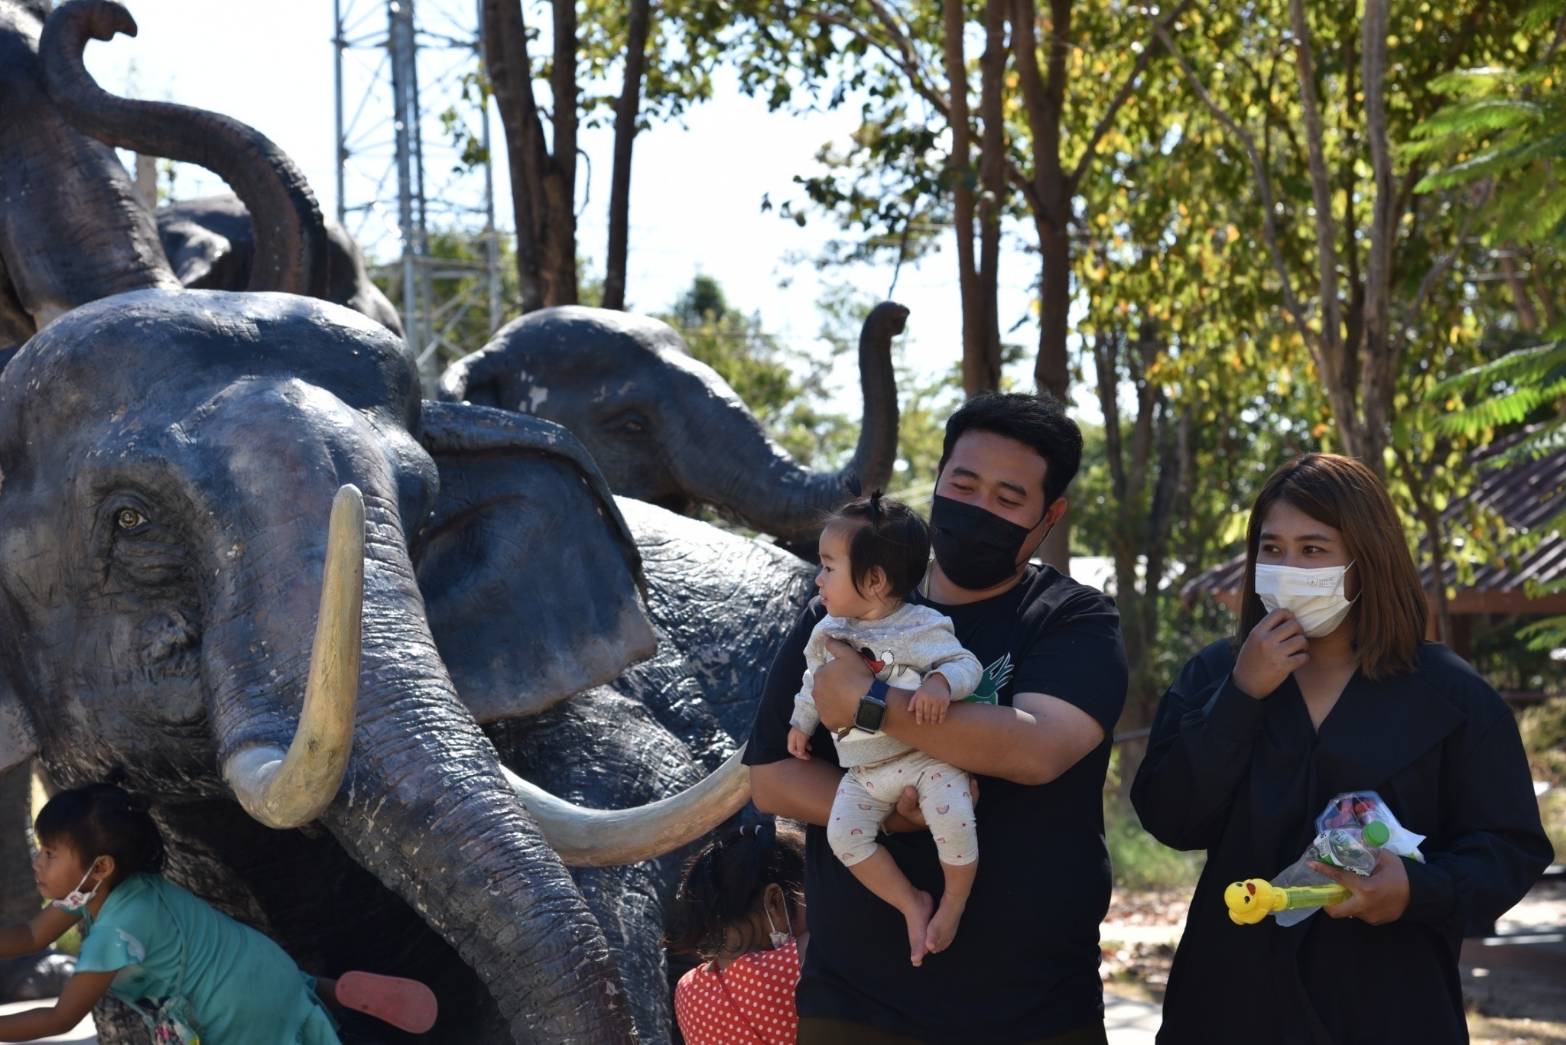 องค์การสวนสัตว์ฯ เปิดพื้นที่จอดรถฟรี สร้างสุขให้คนไทยเที่ยวชมสวนสัตว์ ส่งท้ายปีเก่า ต้อนรับปีใหม่